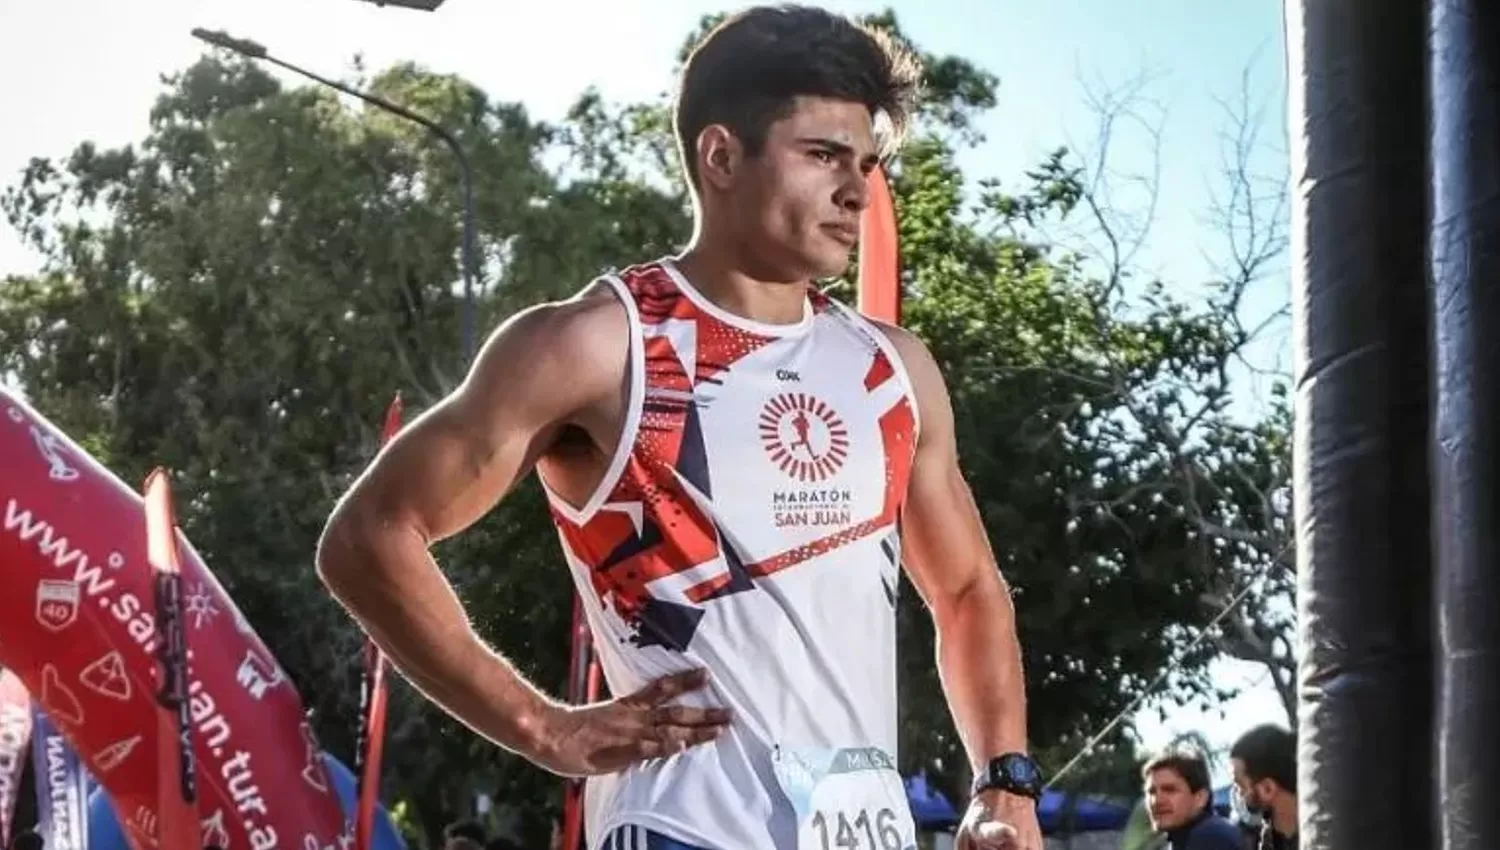 DOLIDO. Juan Manuel Castro llevaba siete años entrenando para competir y ahora no podrá hacerlo.